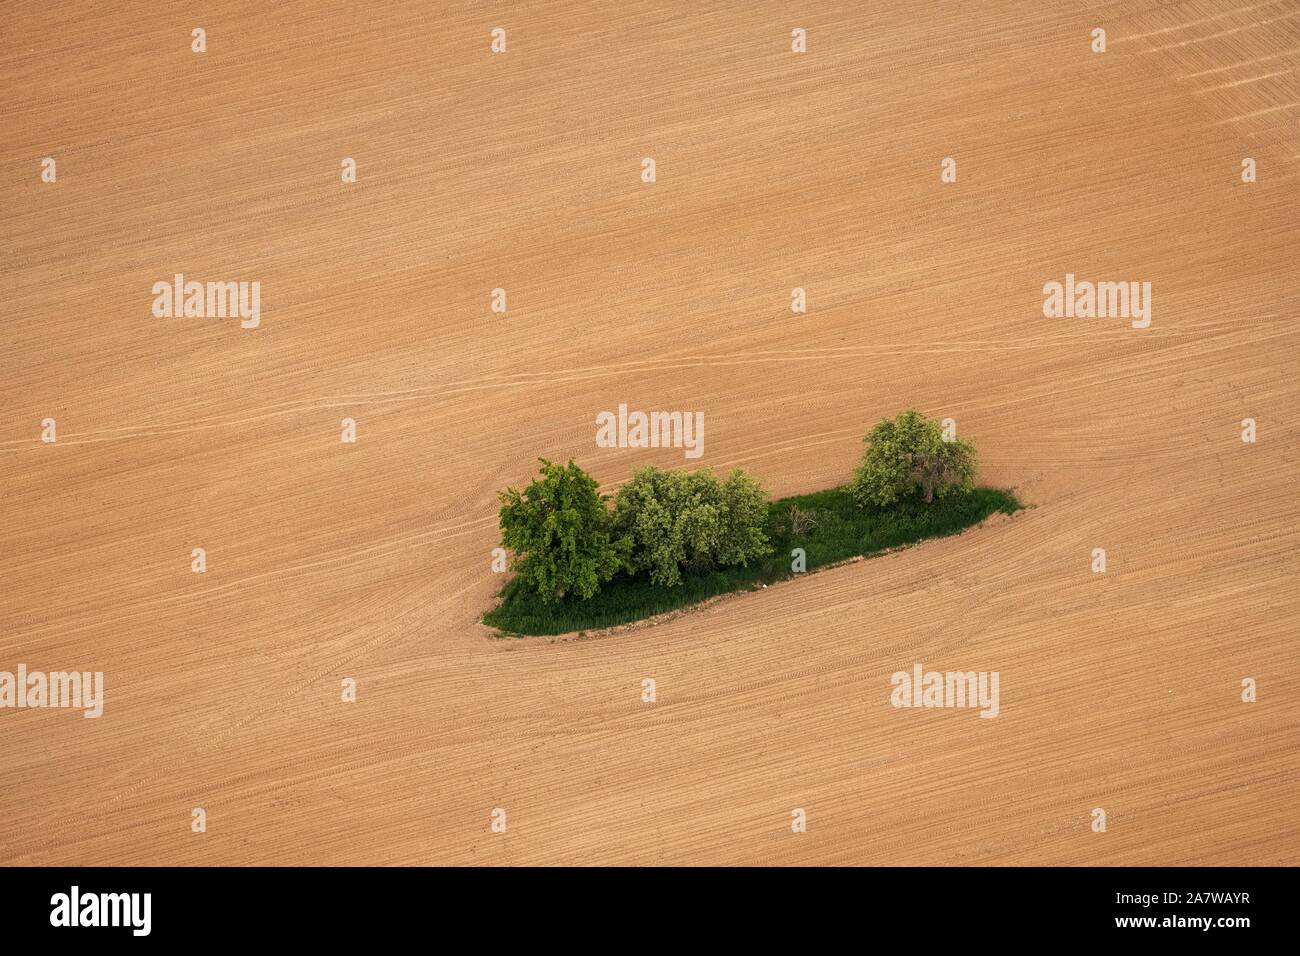 Plowed field in Czech Republic on aerial shot Stock Photo